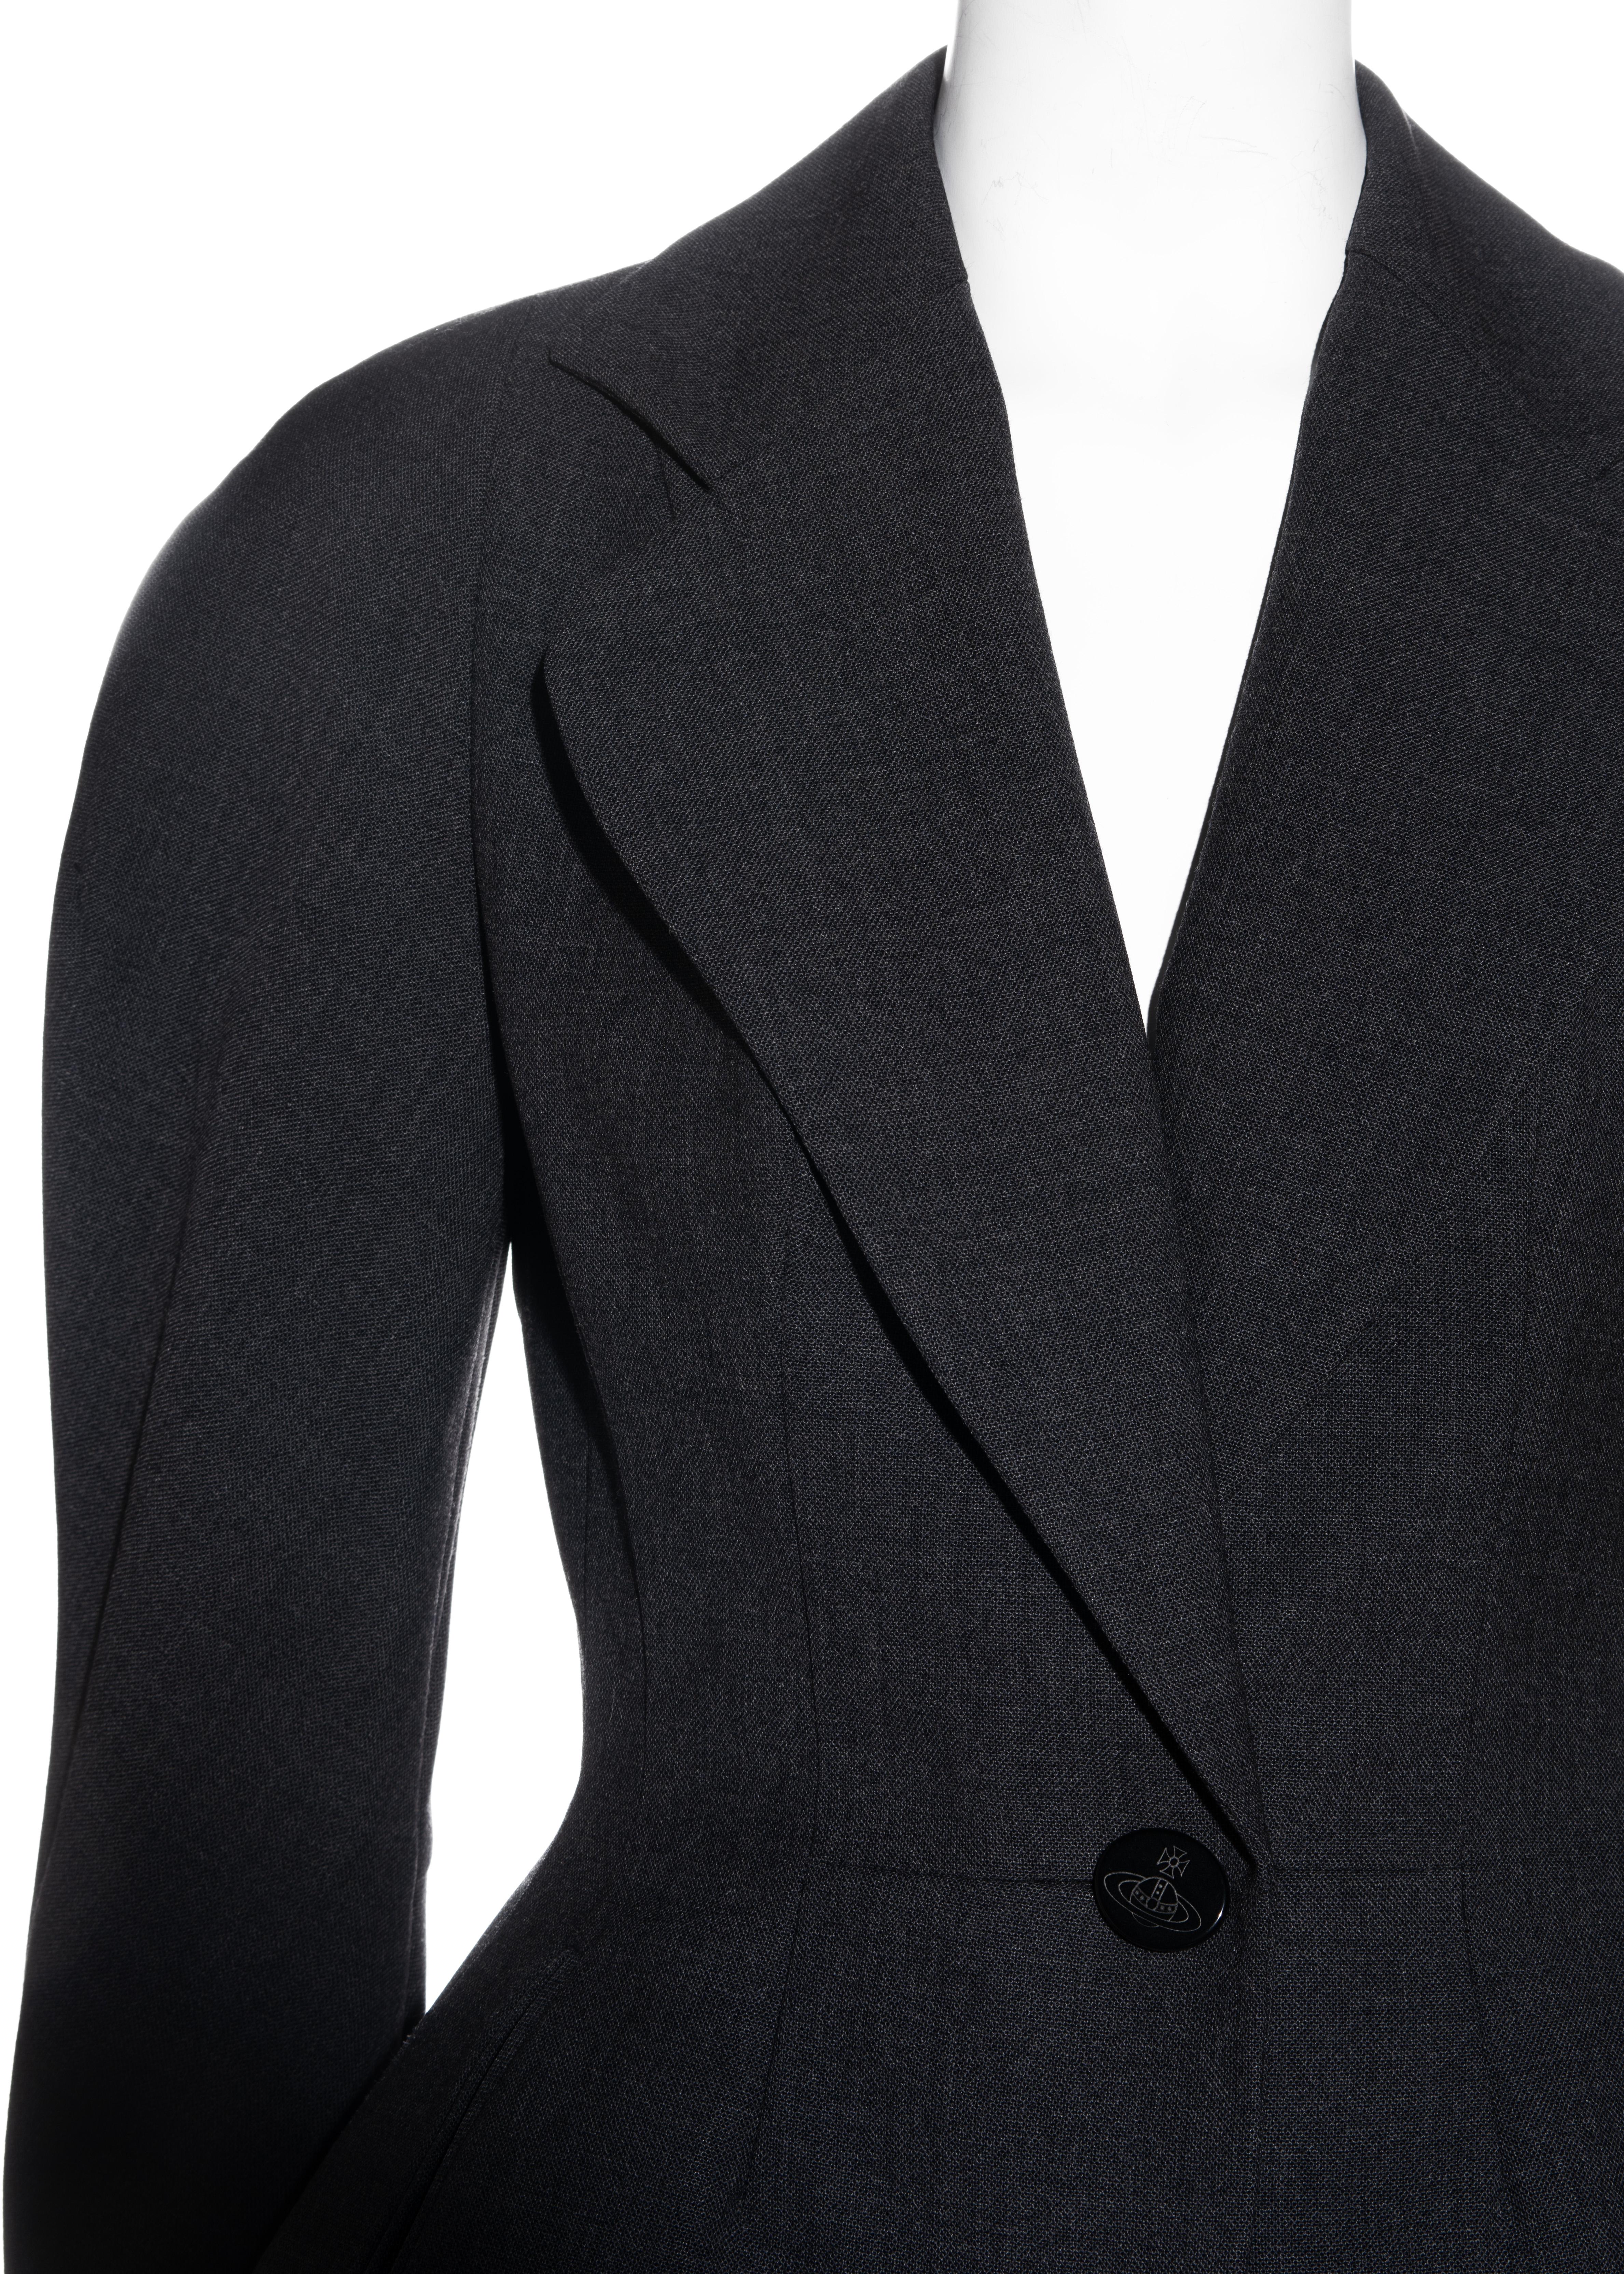 Black Vivienne Westwood grey wool hourglass jacket, fw 1995